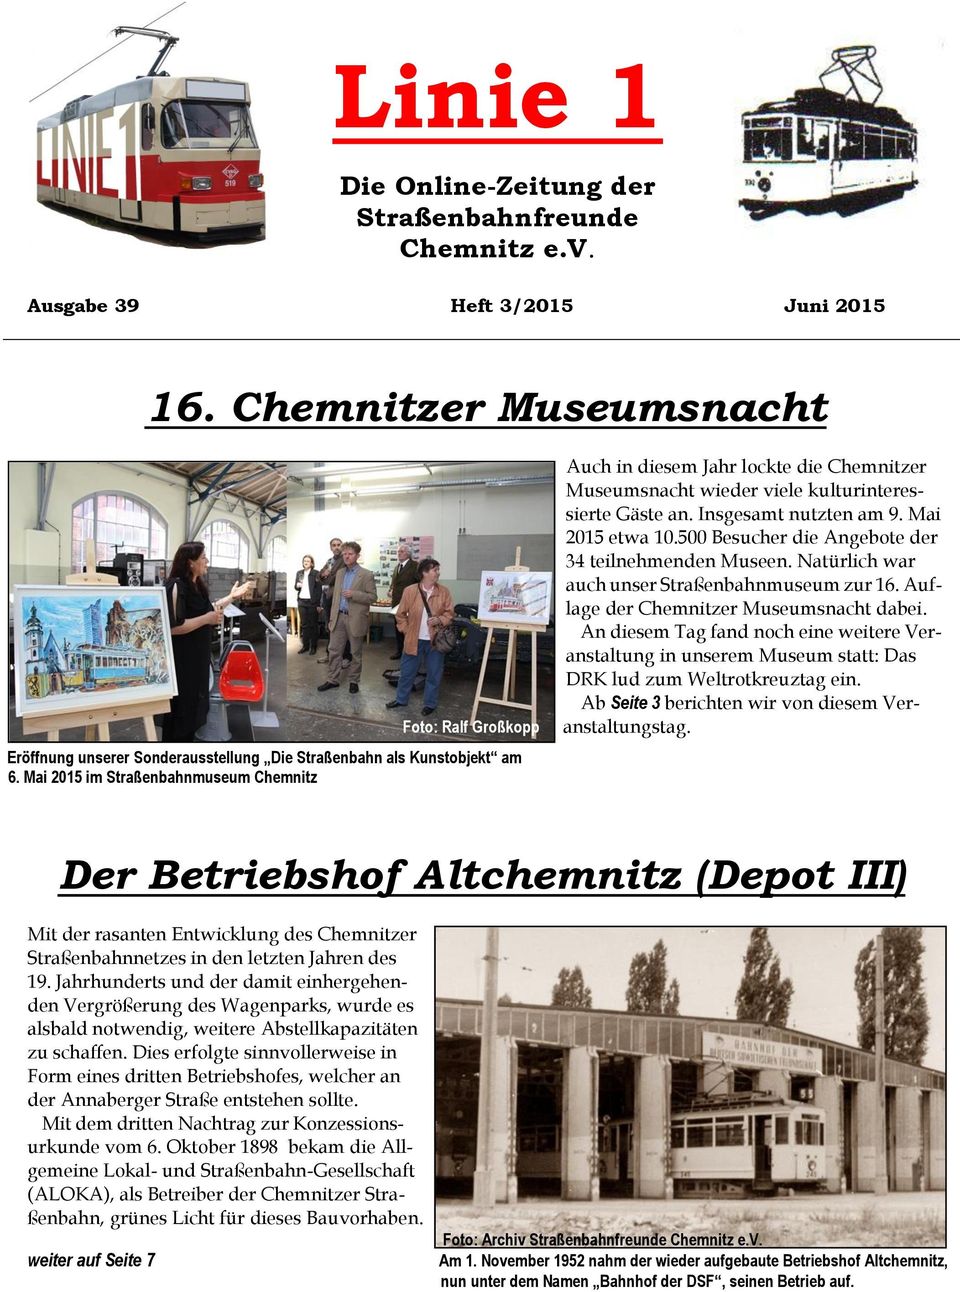 500 Besucher die Angebote der 34 teilnehmenden Museen. Natürlich war auch unser Straßenbahnmuseum zur 16. Auflage der Chemnitzer Museumsnacht dabei.